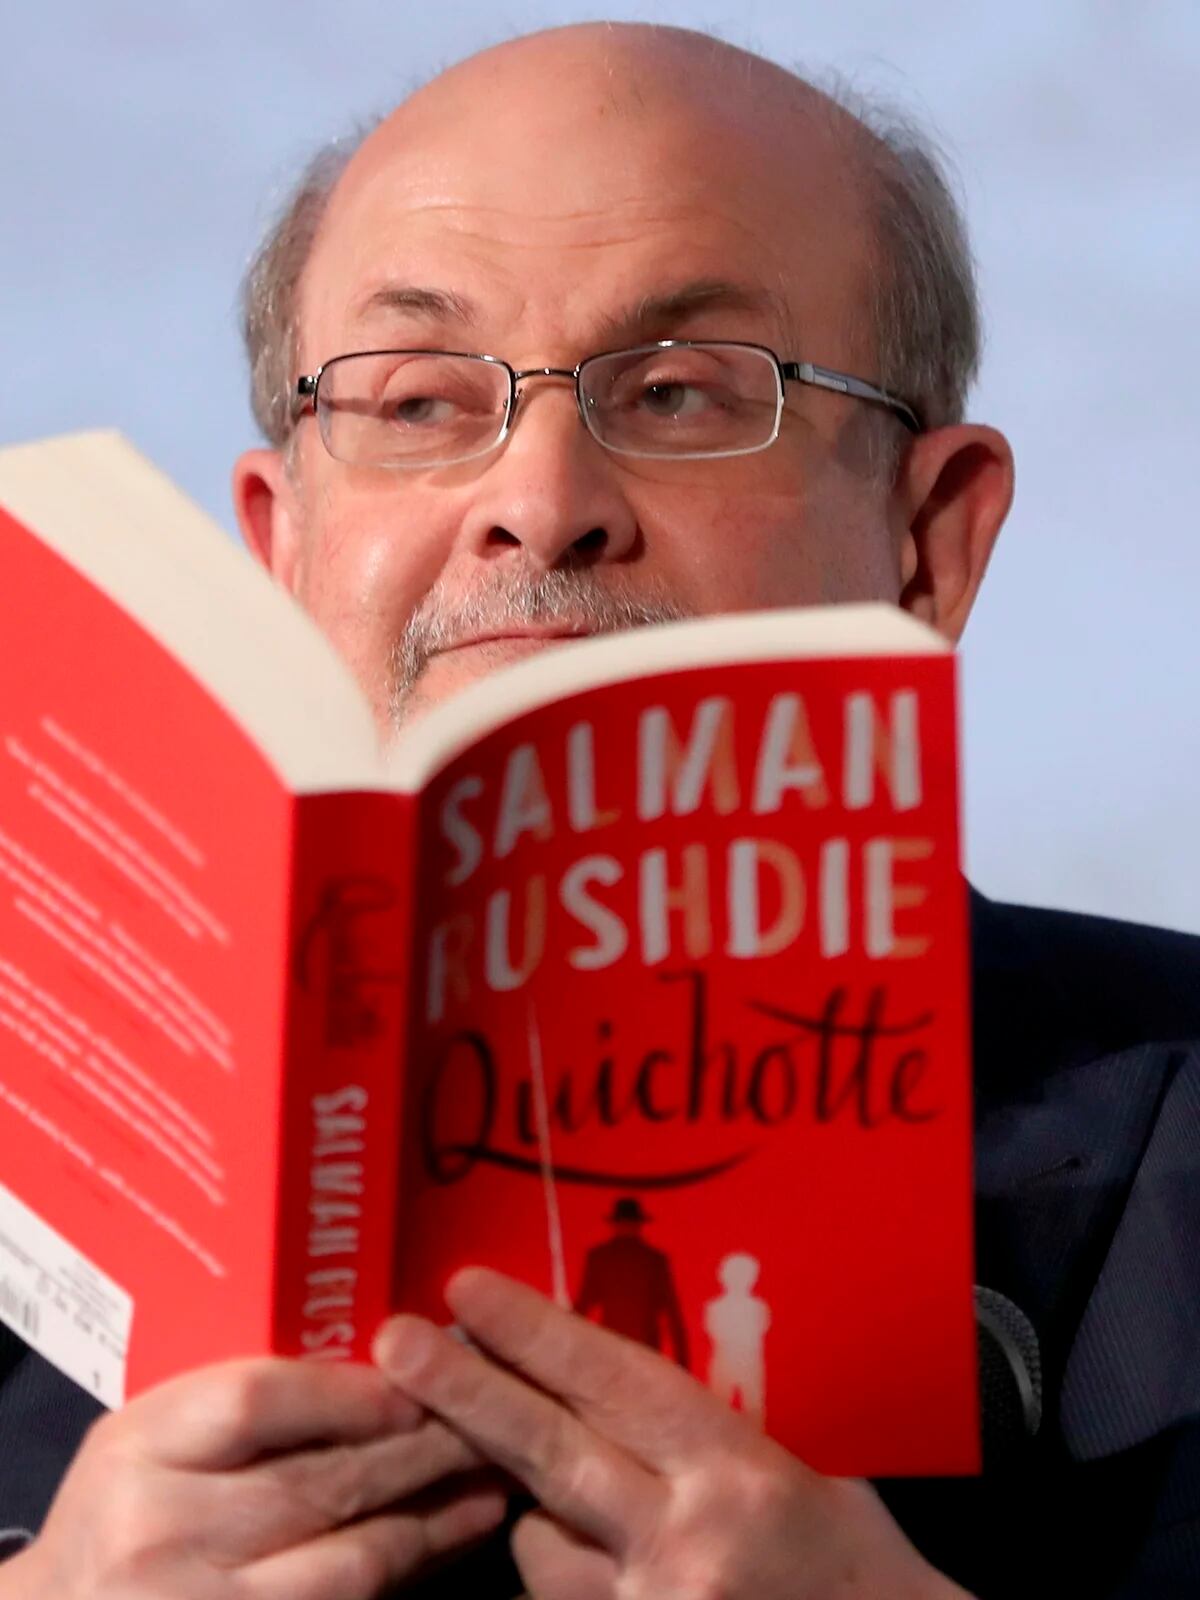 Rushdie, Duras, Regàs, el papa y el 11M, protagonistas en libros de